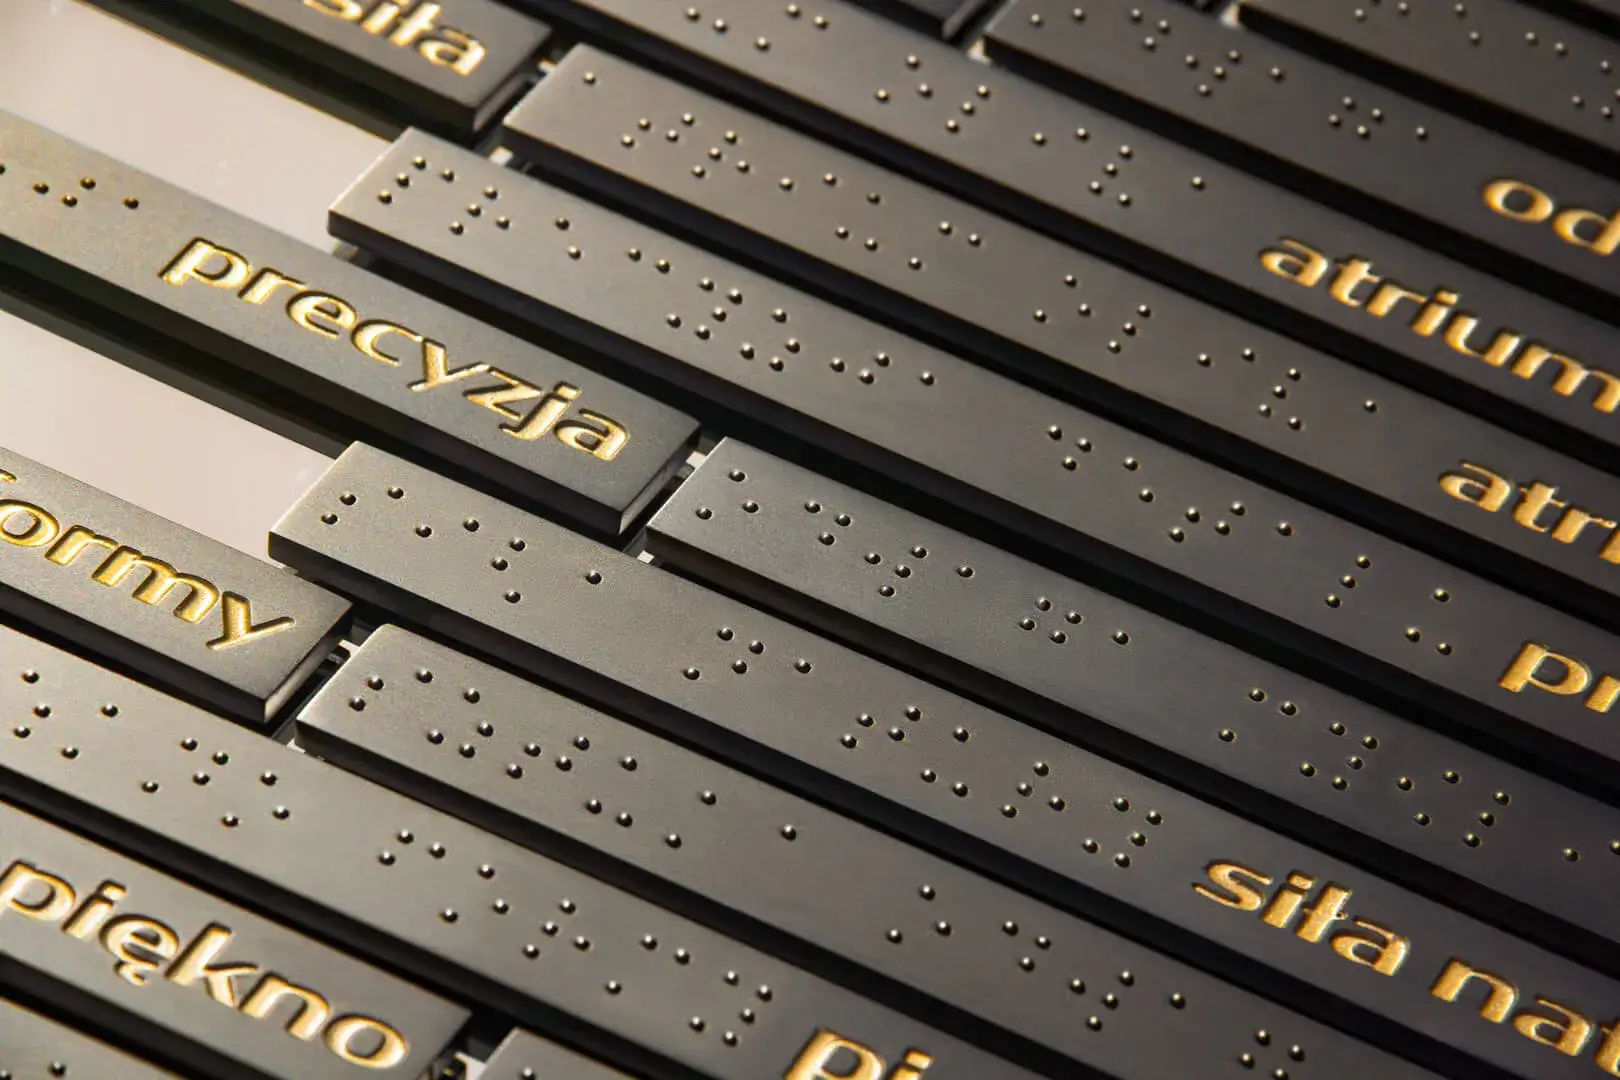 tabliczka z zapisem w alfabecie Braille'a